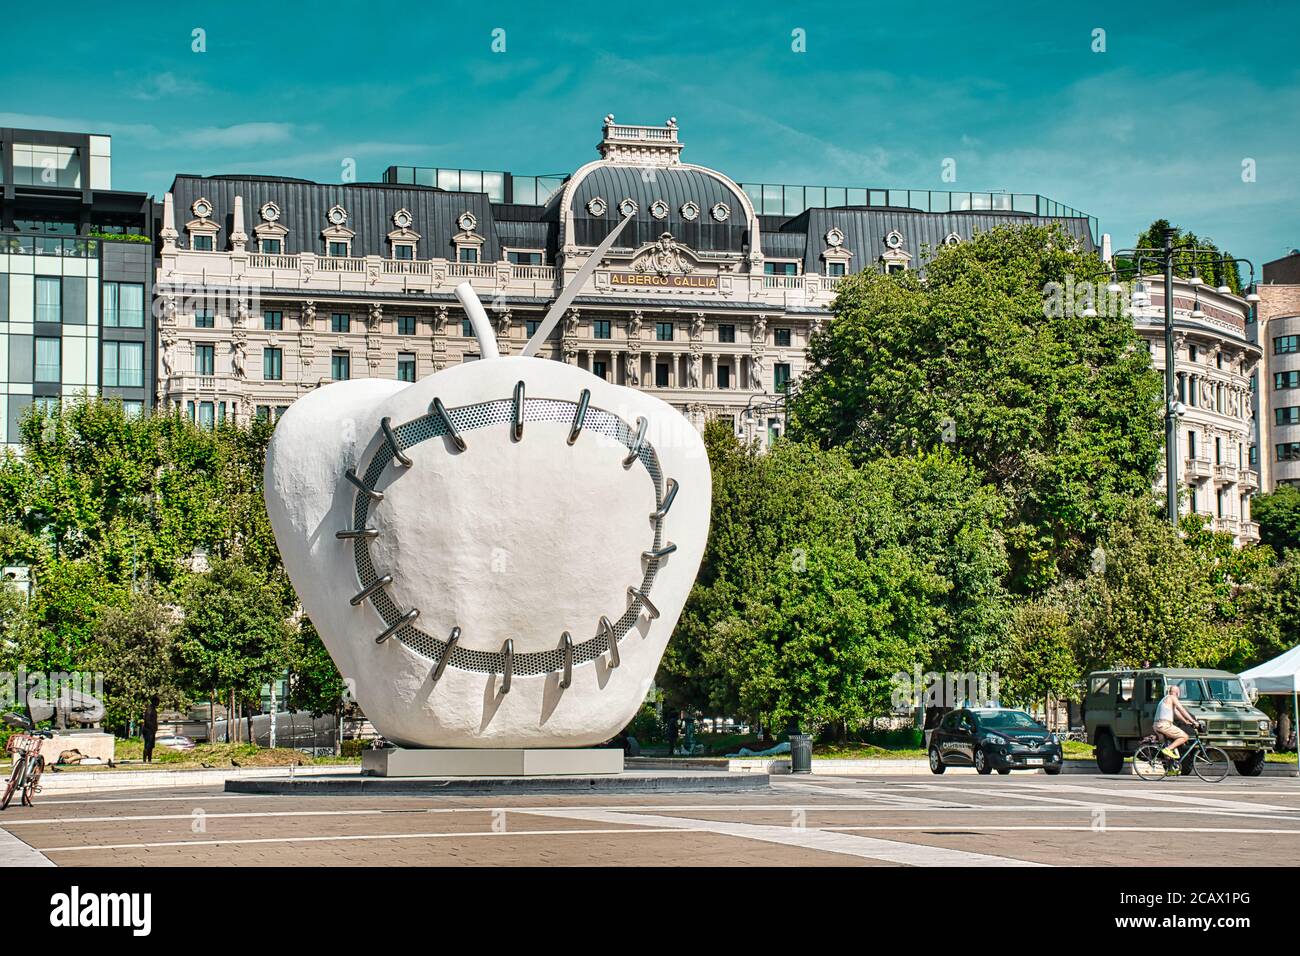 Milan, Italie 08.08.2020: La Mela Reintegrata, la pomme fait de nouveau la sculpture entière devant la gare centrale de Milan. C'est un W symbolique Banque D'Images